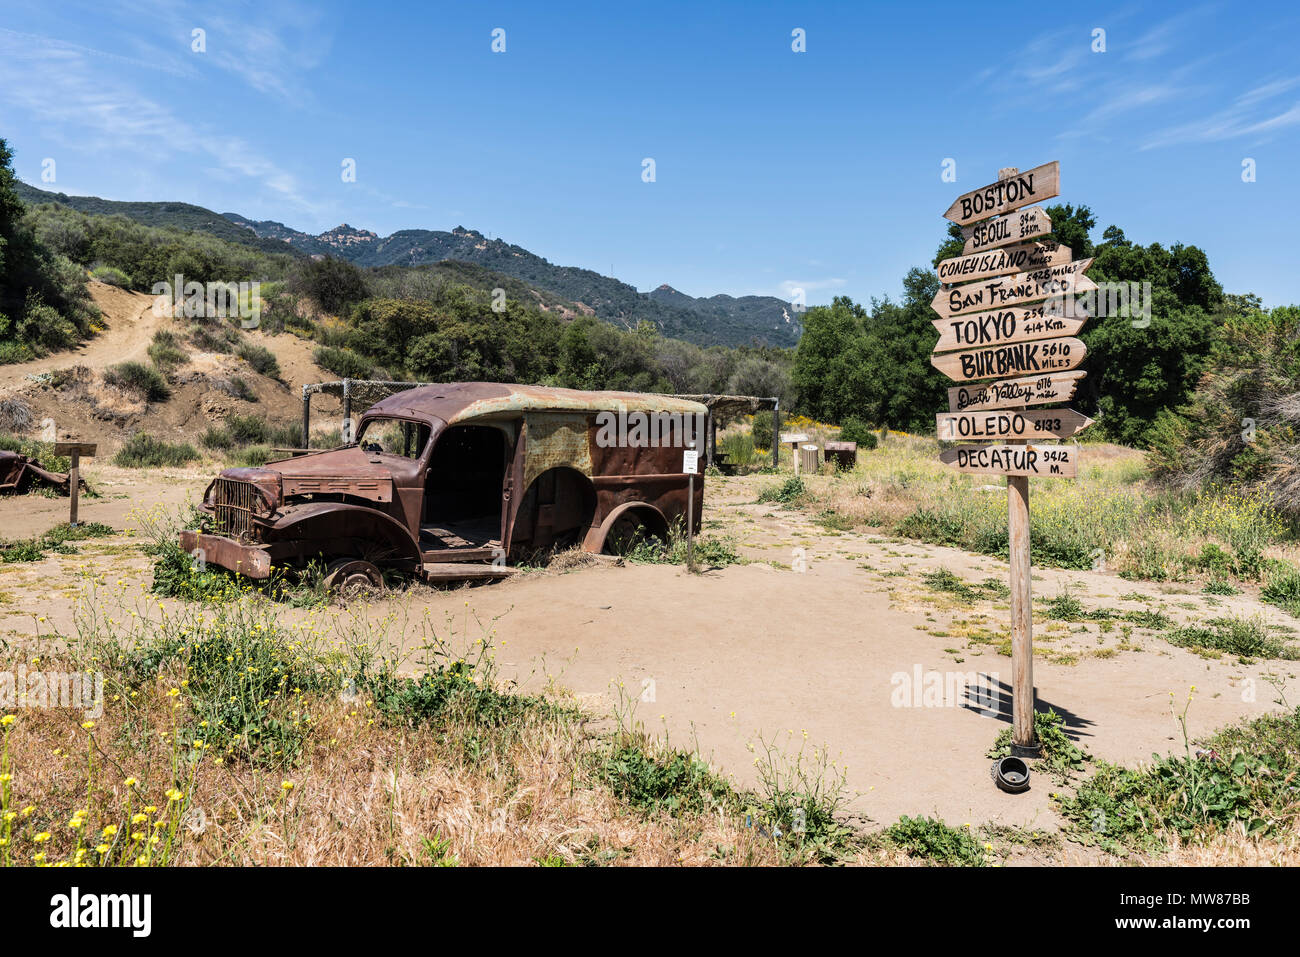 Malibu, Kalifornien, USA - 29. Mai 2018: Alt bin*A*S*H"-Films ein Zeichen und Fahrzeug auf Anzeige im Malibu Creek State Park in den Santa Monica Mountains. Stockfoto